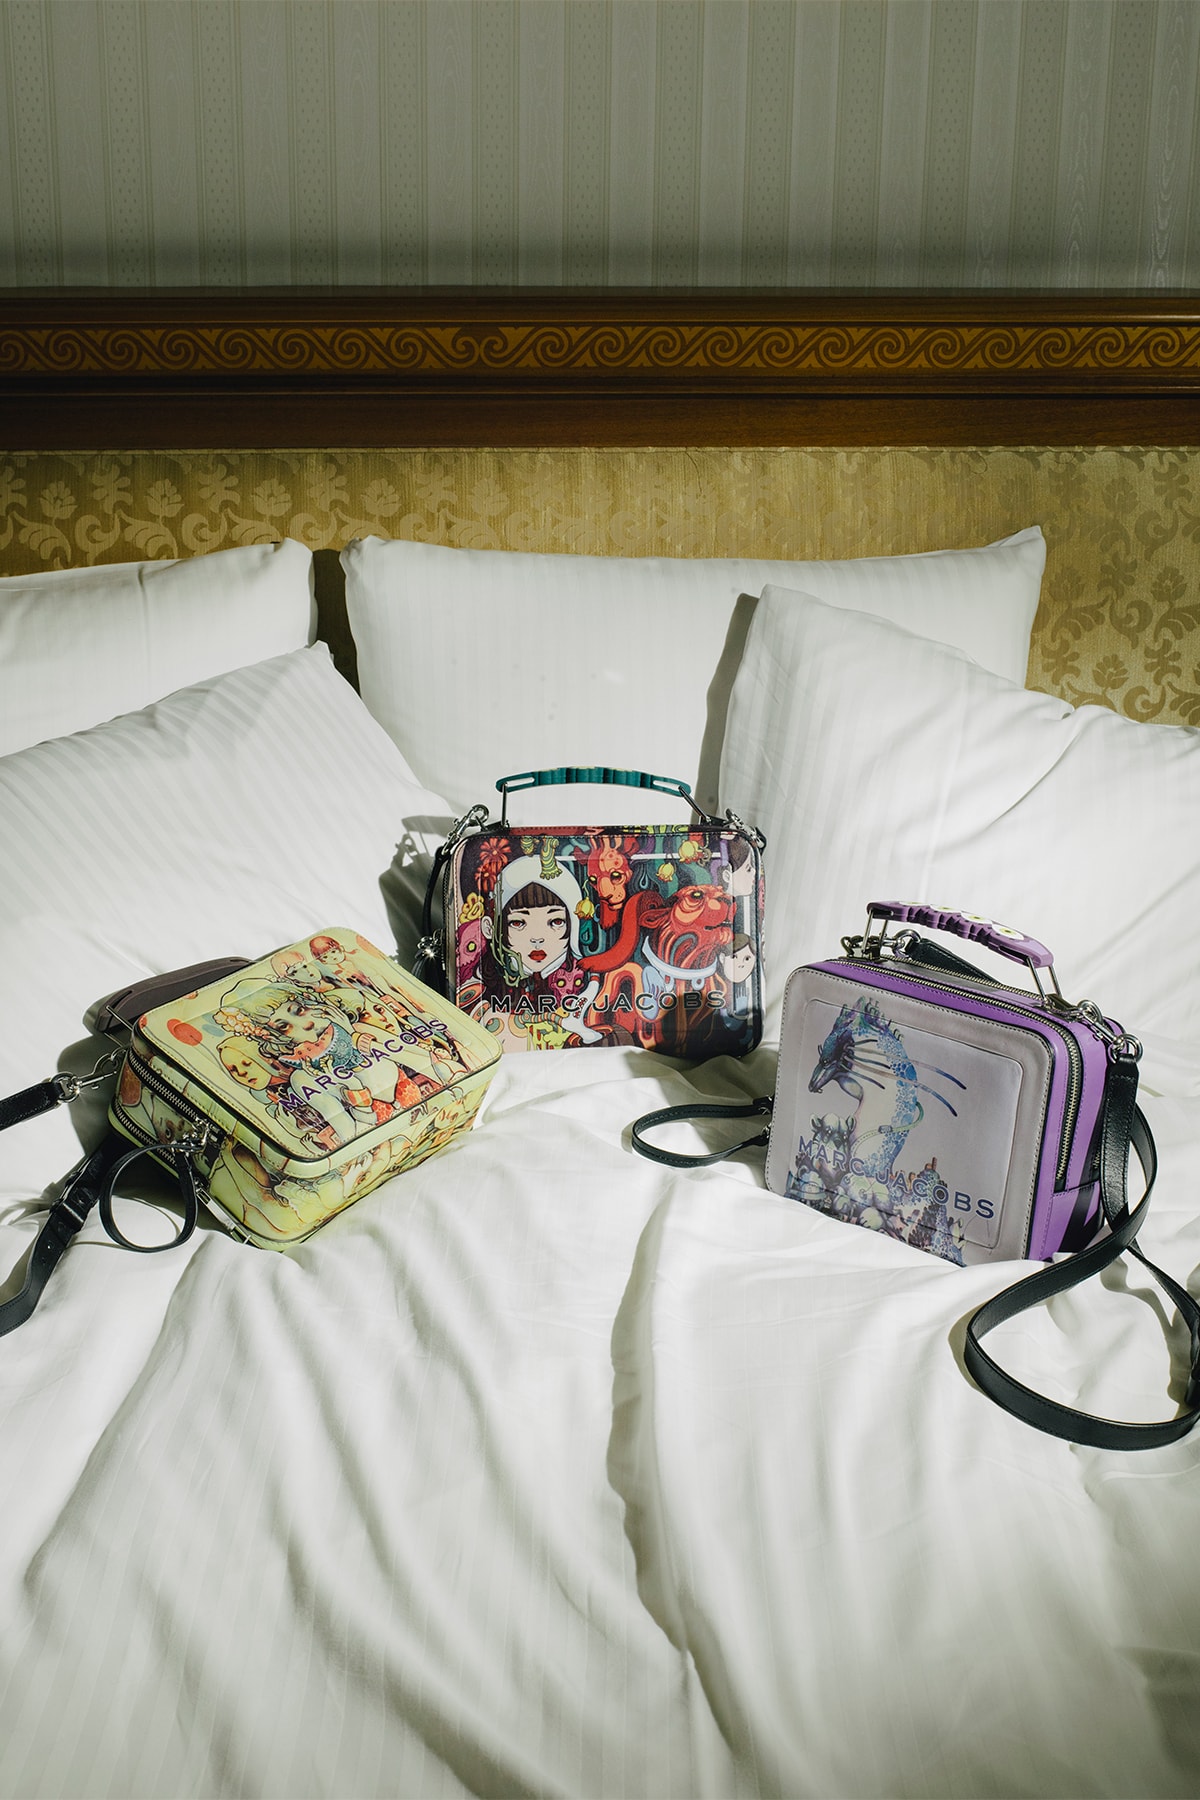 lauren tsai terrace house netflix collaboration marc jacobs handbags mini backpacks wallets campaign lookbook